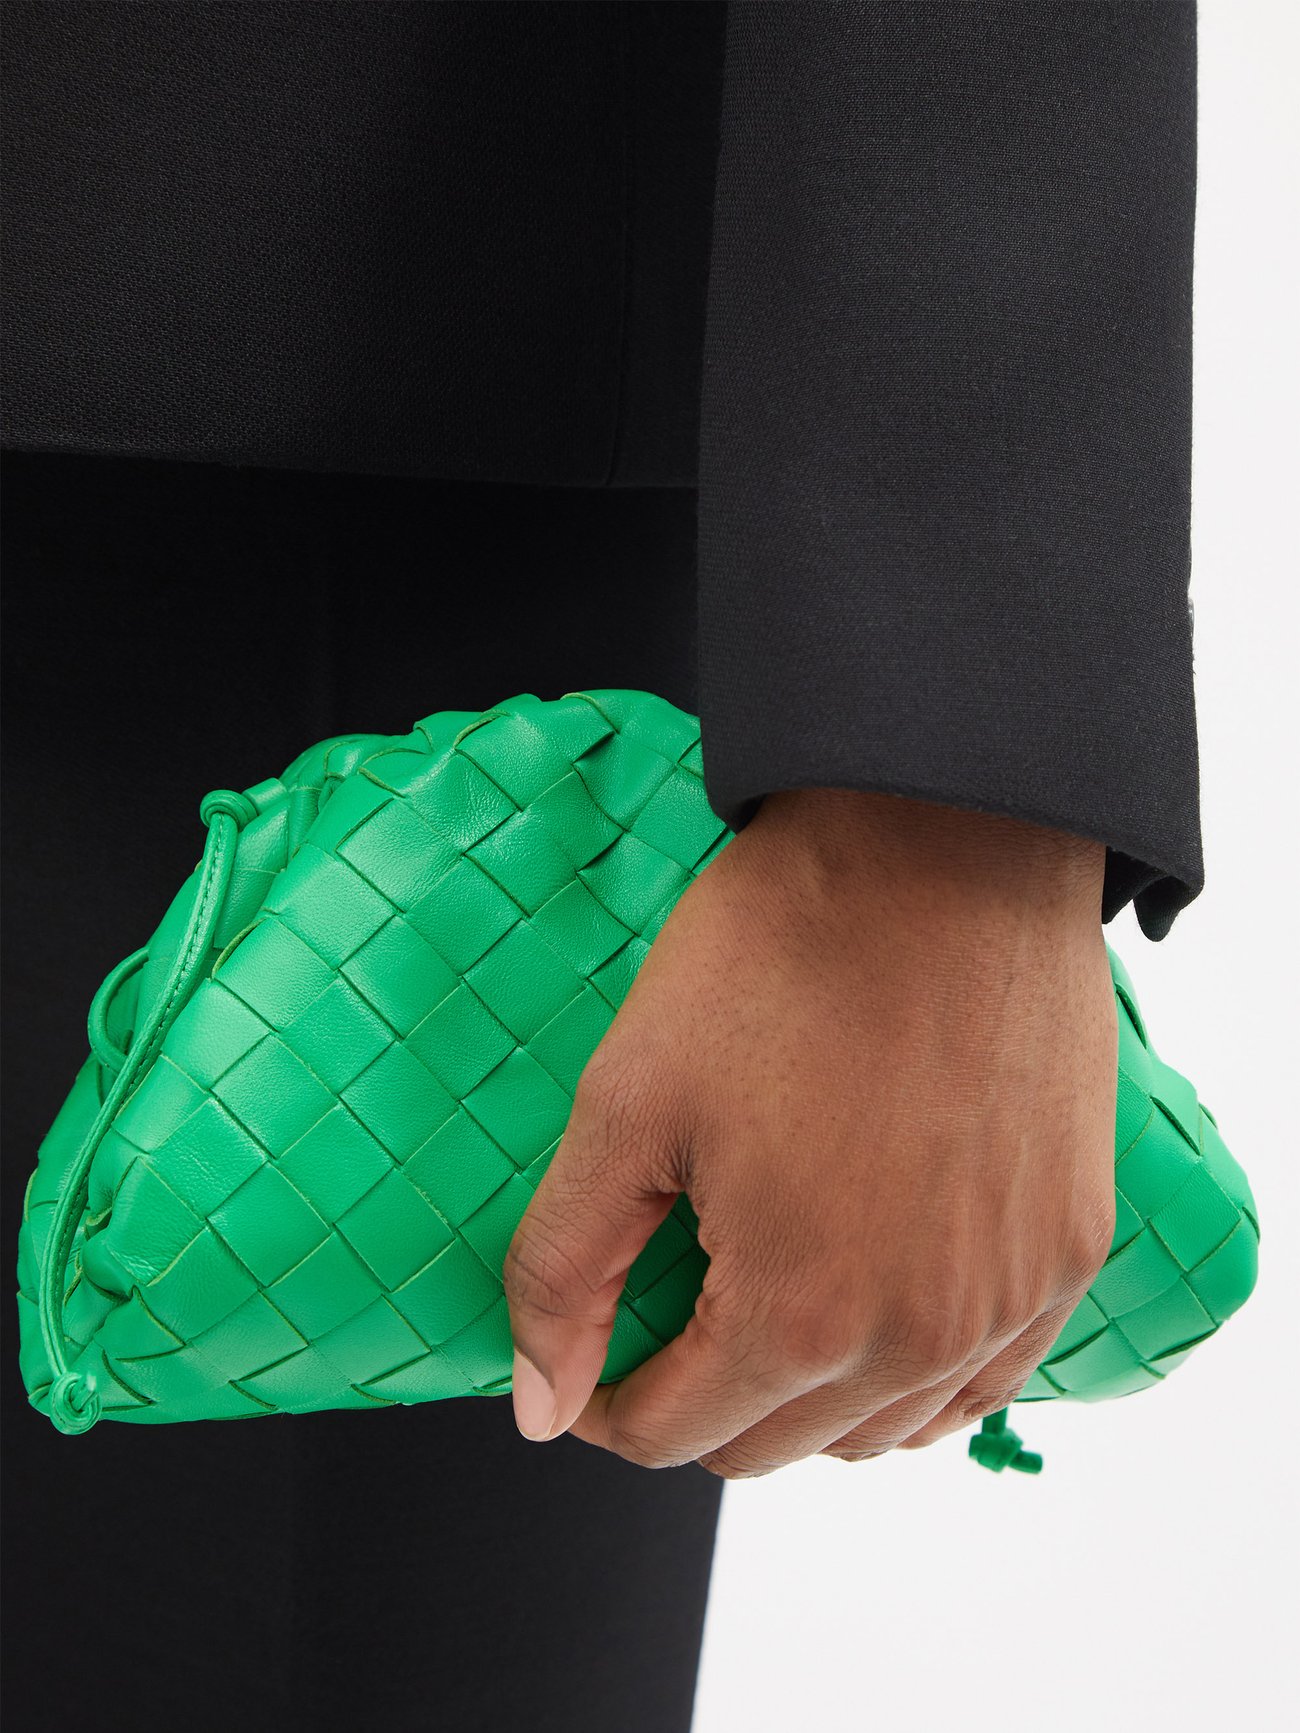 Bottega Veneta The Mini Pouch Bag in Green Leather Intrecciato — UFO No More